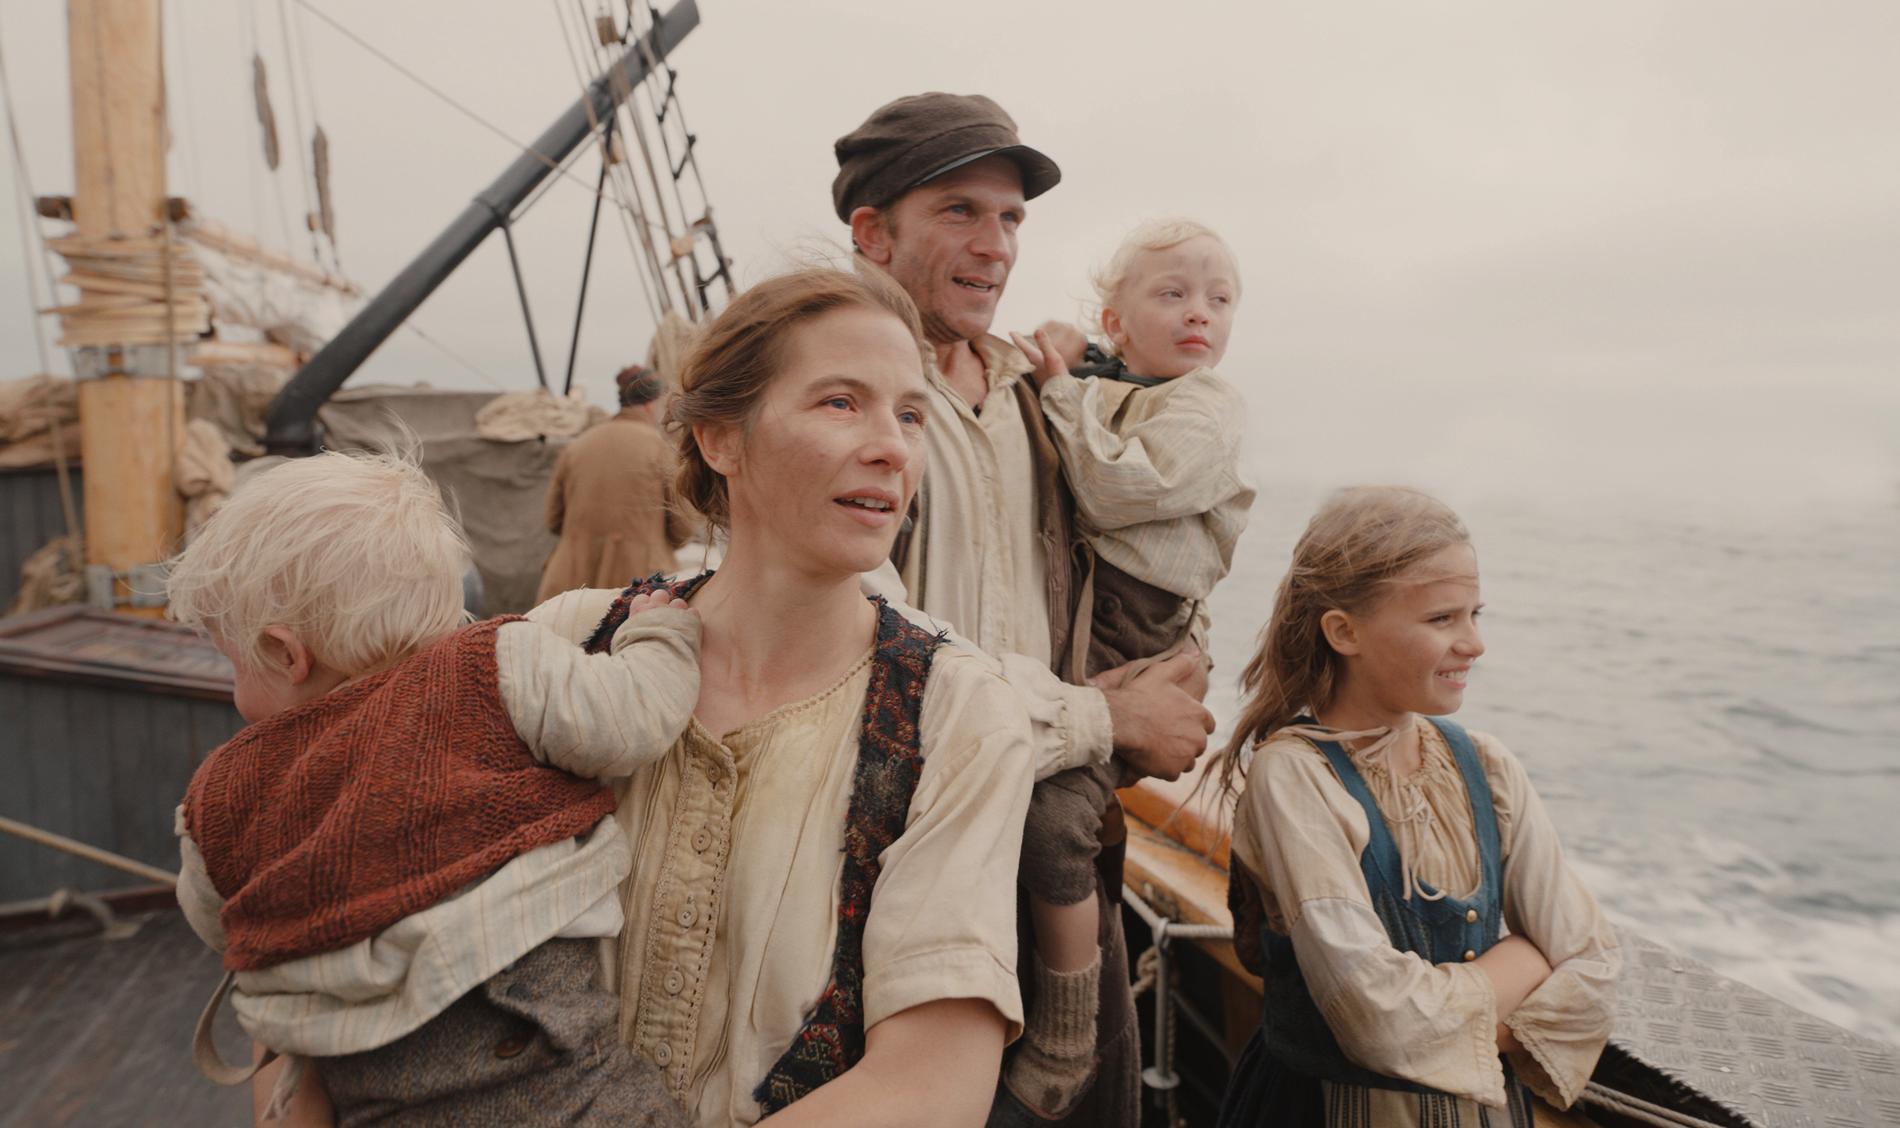 På juldagen är det premiärdags för "Utvandrarna", baserad på Vilhelm Mobergs epos. I huvudrollerna syns Lisa Carlehed och Gustaf Skarsgård. Pressbild.